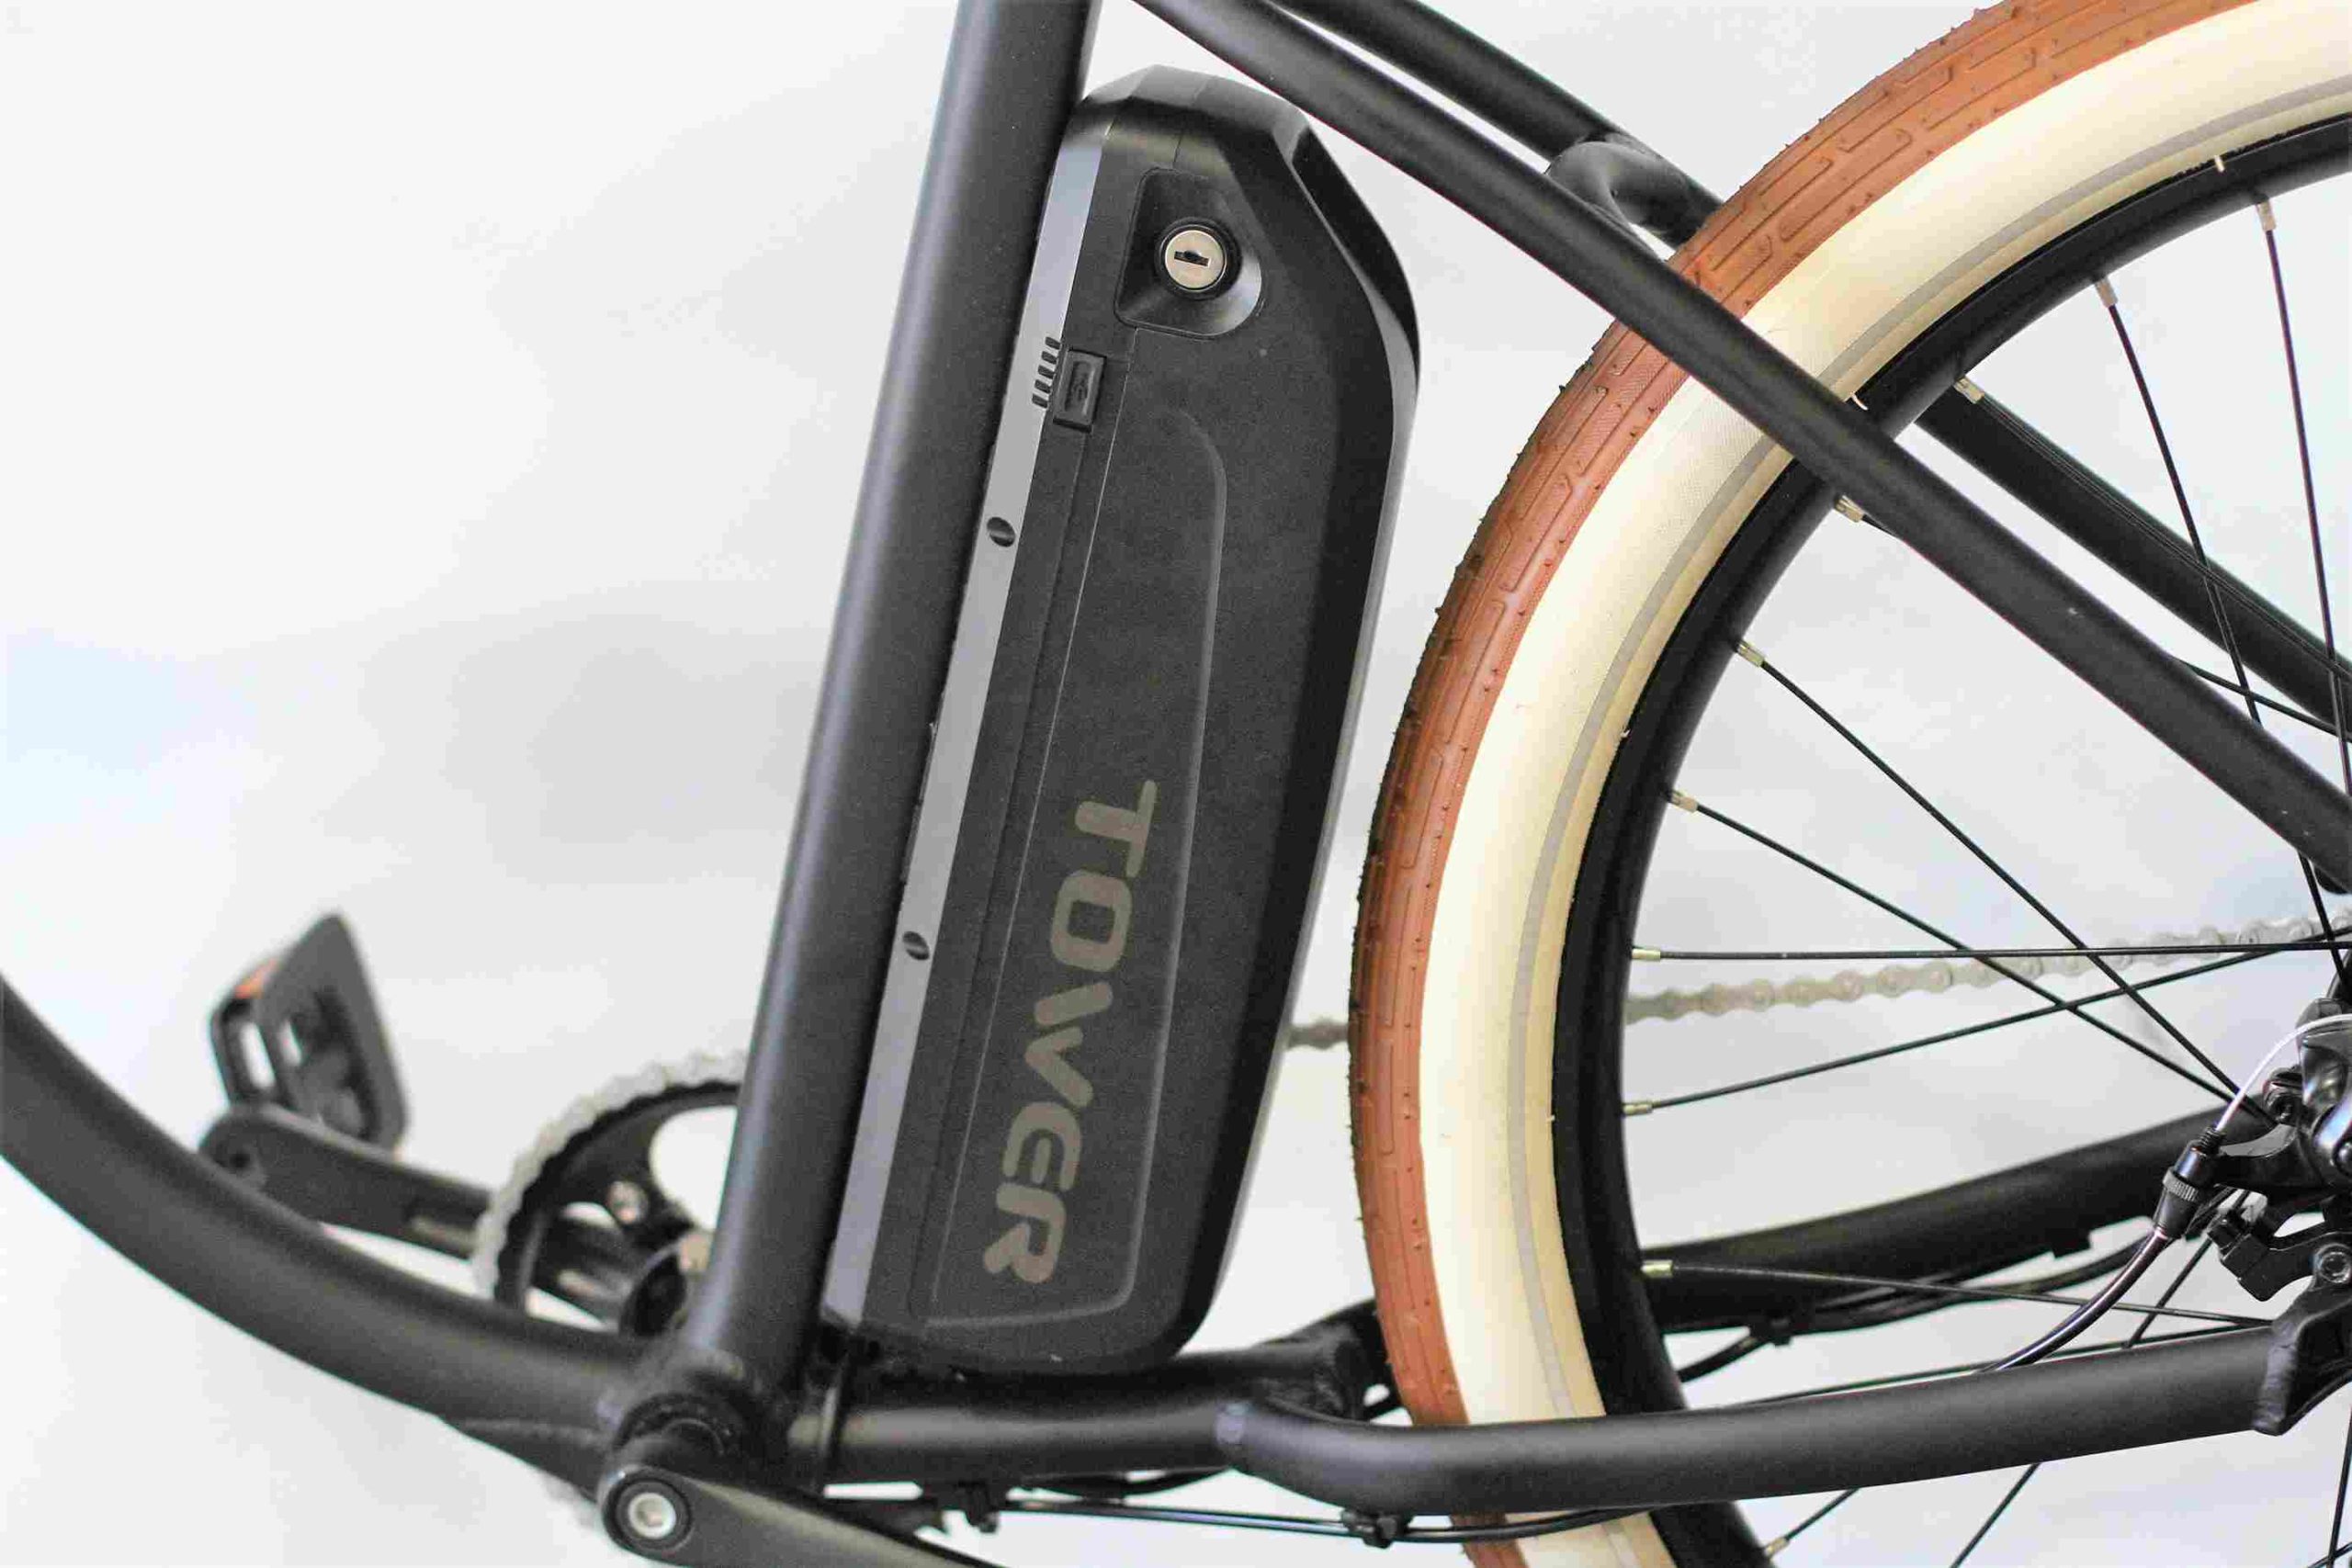 un cycliste se demandant peut-on mettre une batterie plus puissante sur un vélo électrique - vue de la batterie